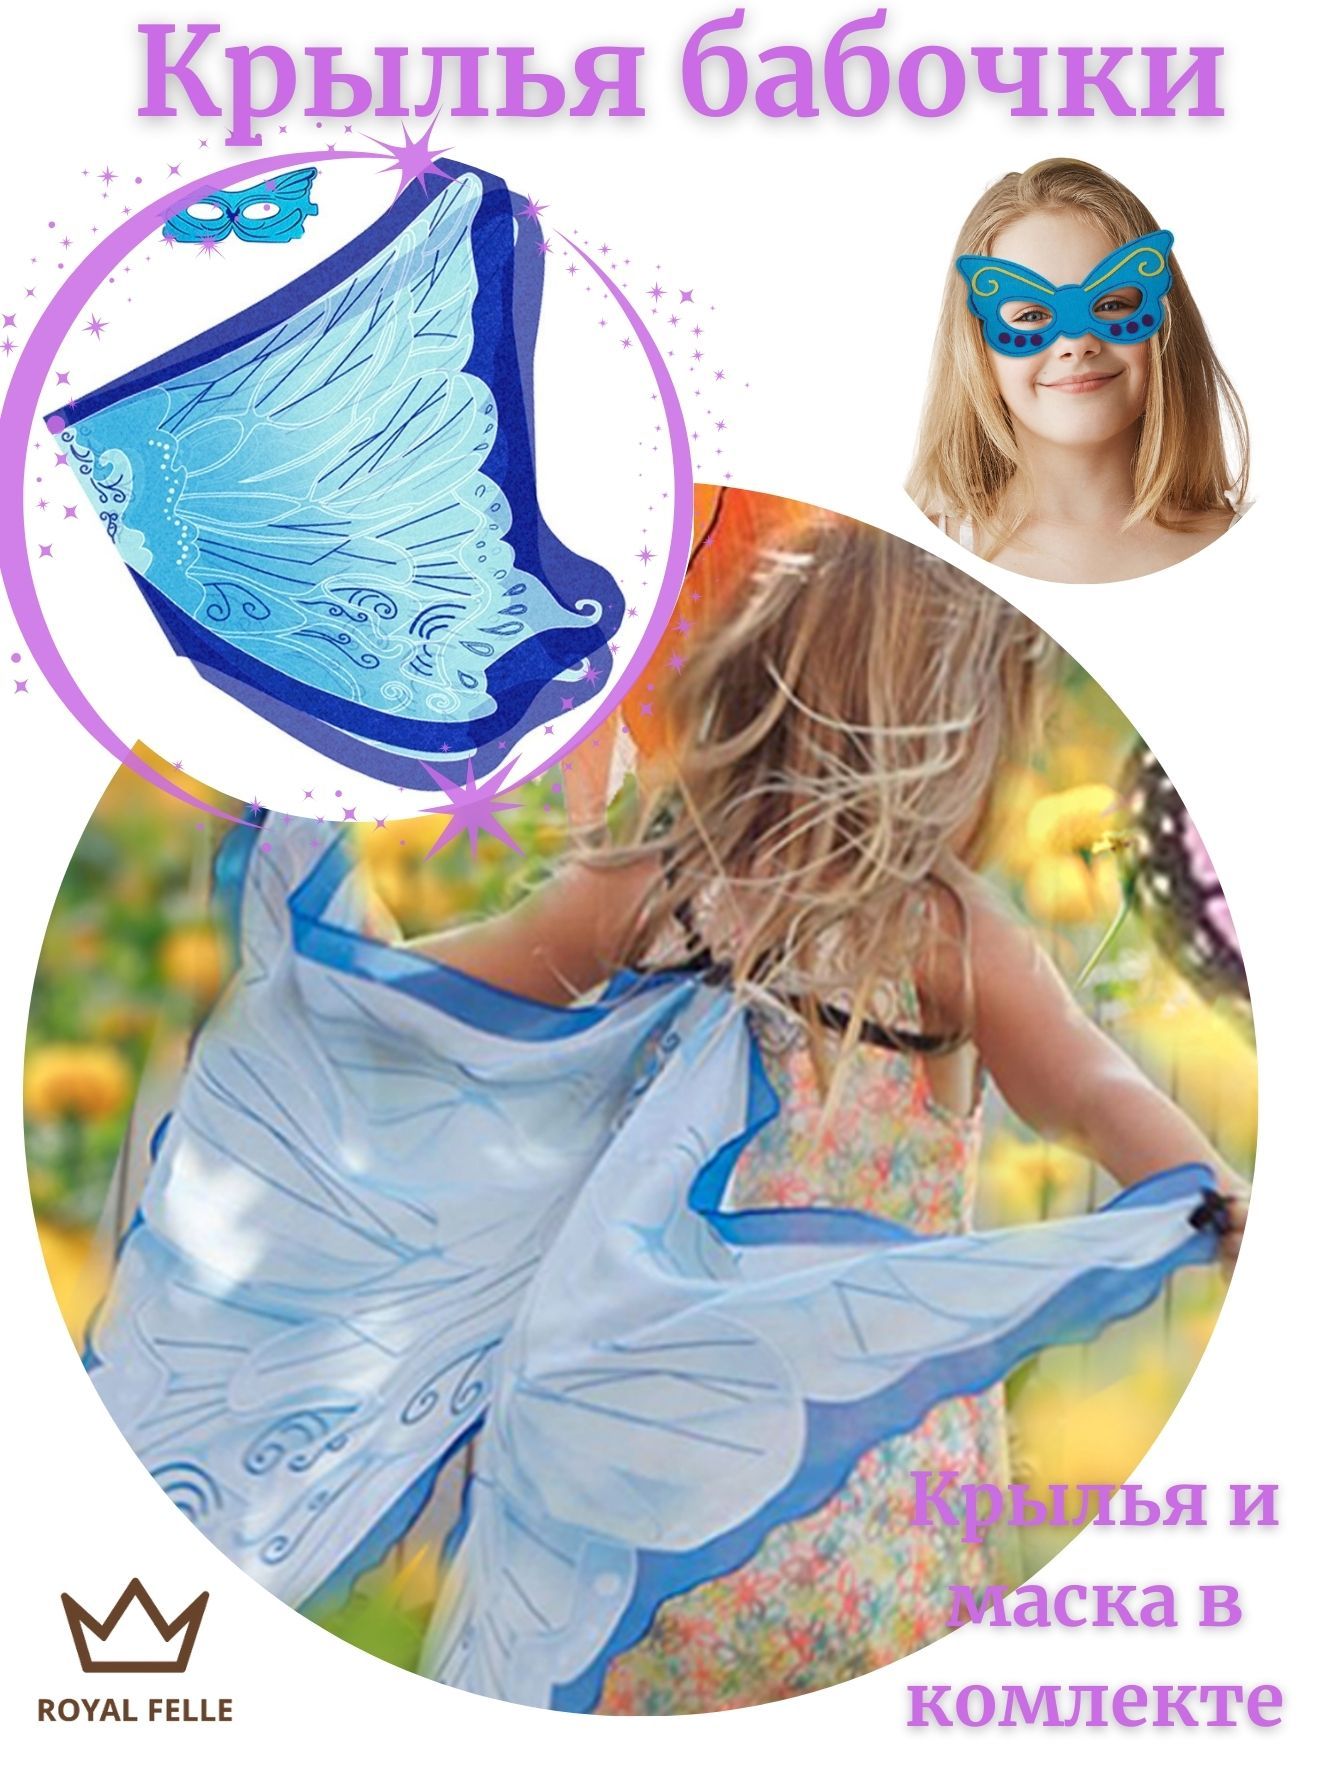 Детские карнавальные аксессуары ROYAL FELLE Крылья бабочки синие SP32-1C